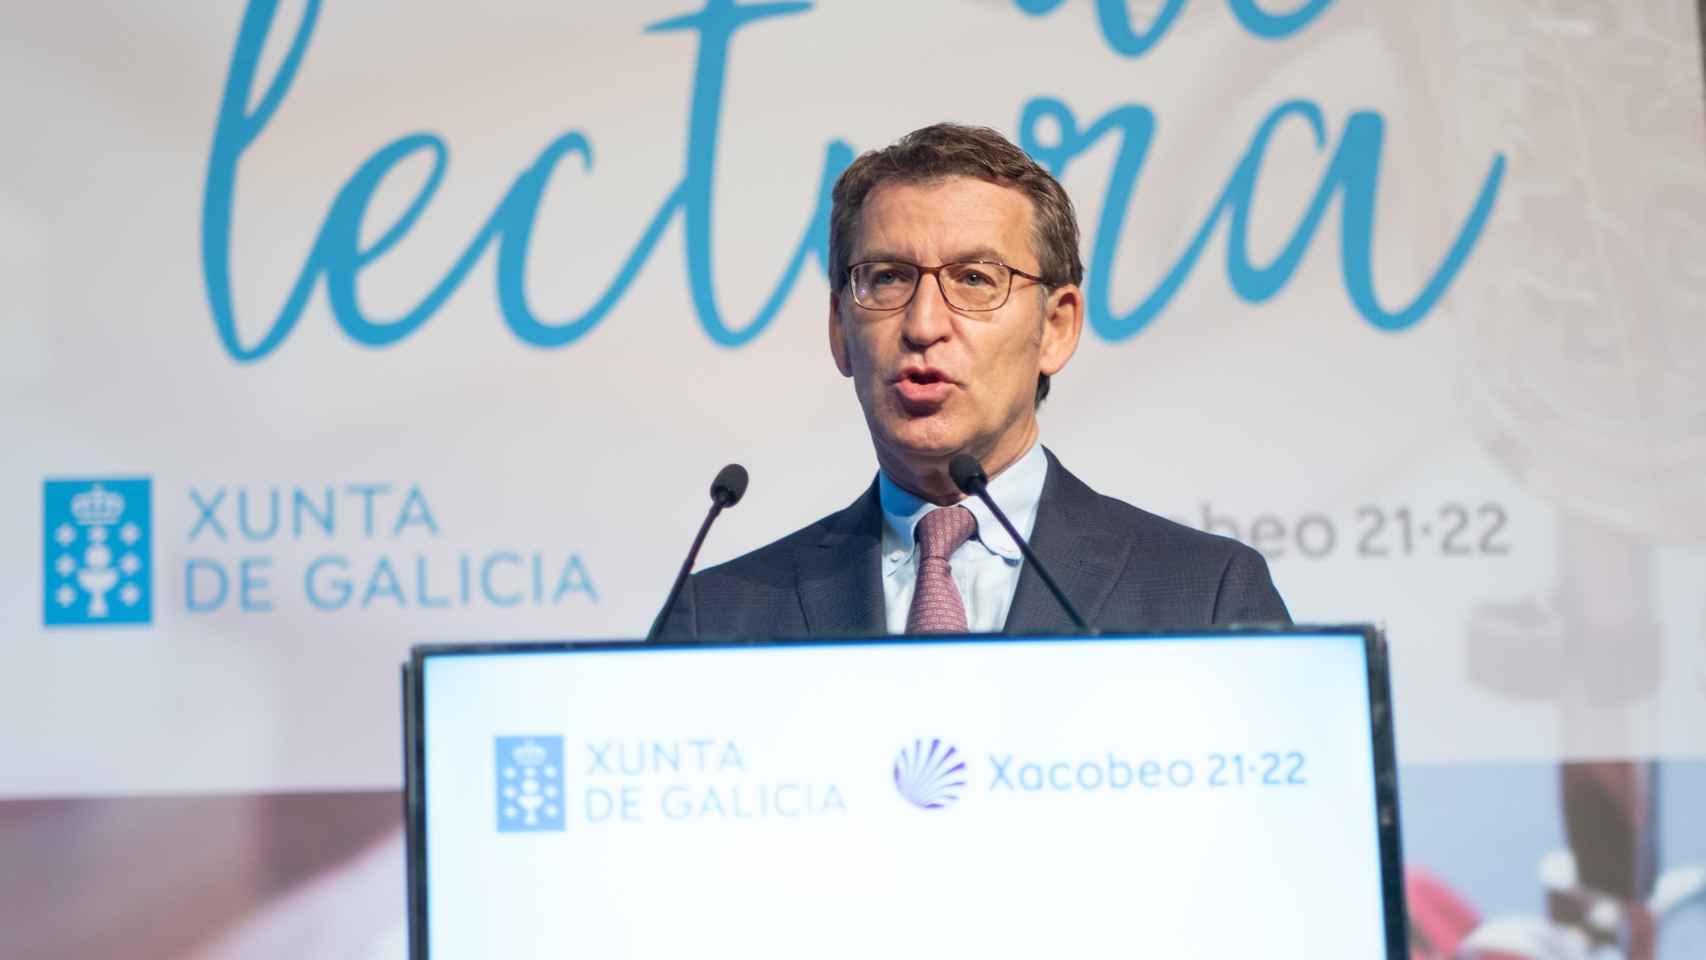 El presidente de la Xunta de Galicia, Alberto Núñez Feijóo, durante una rueda de prensa.